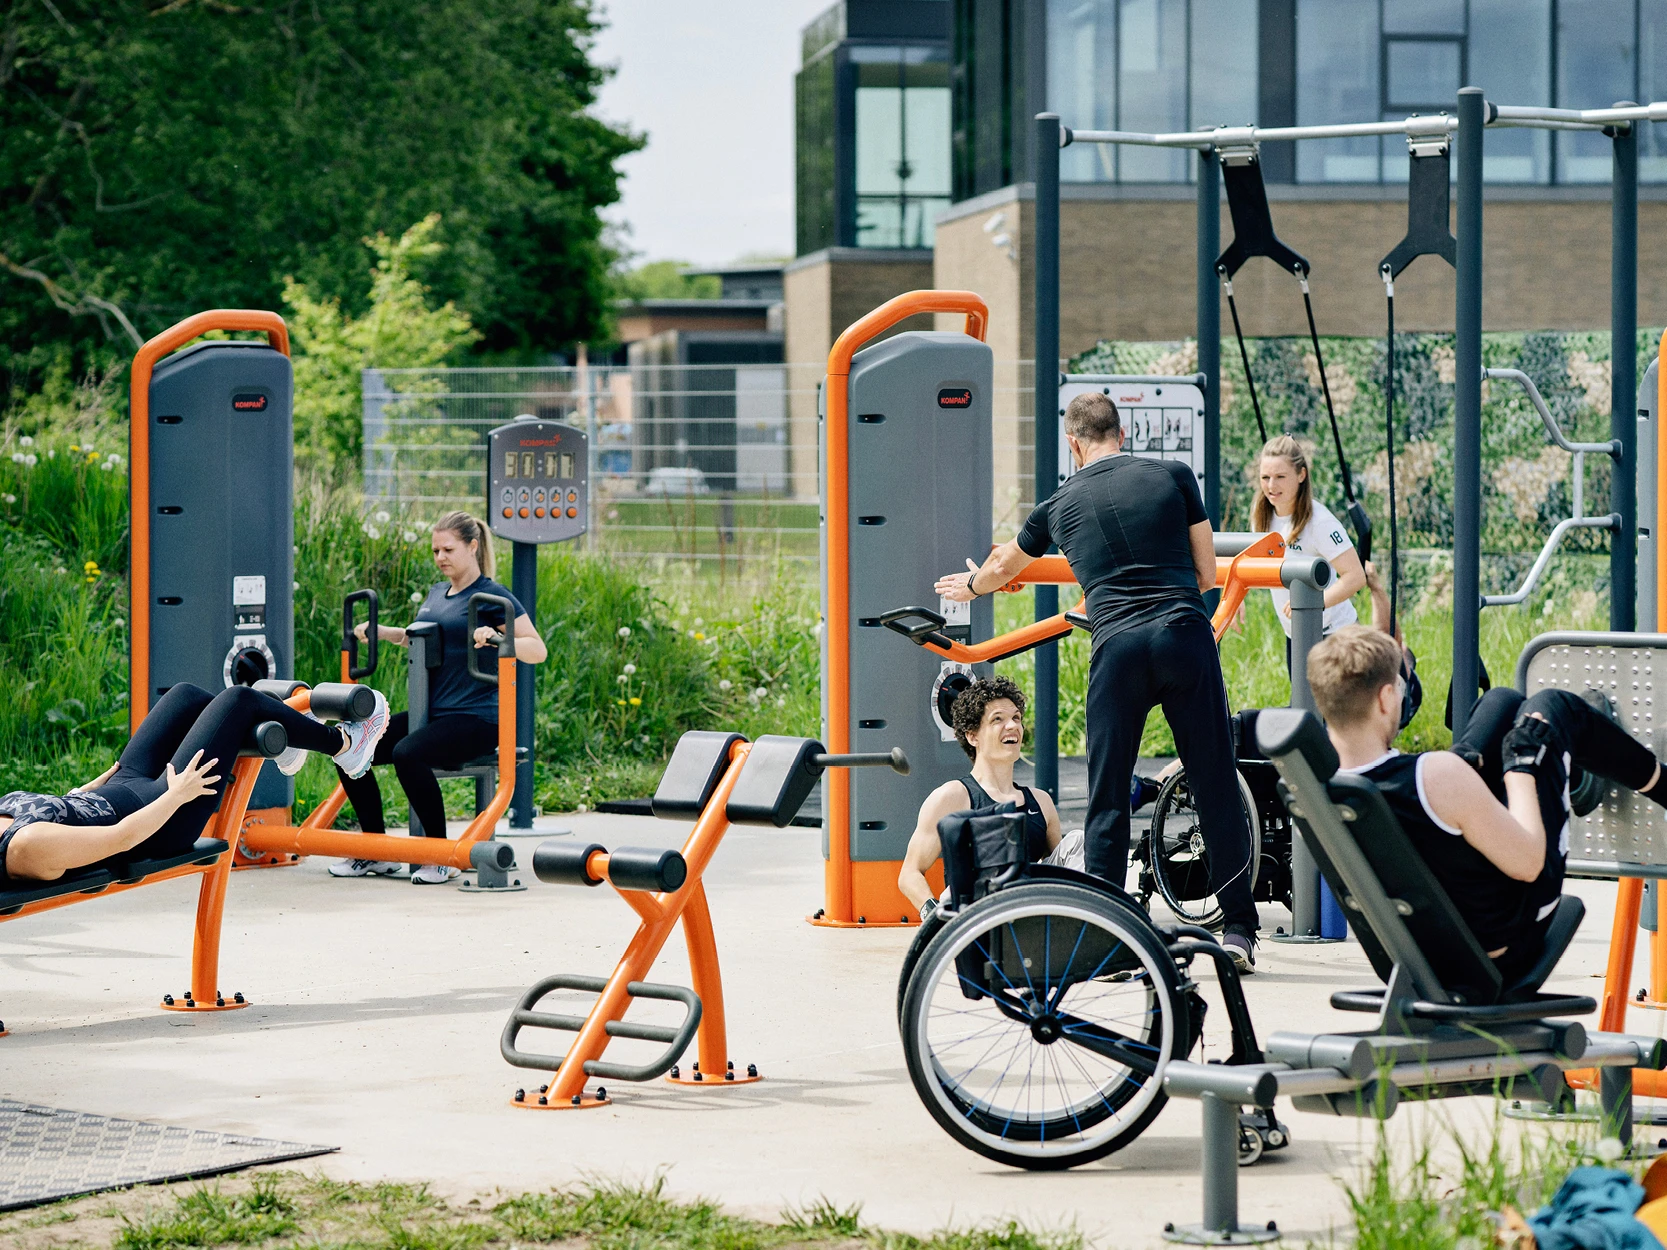 En grupp människor med och utan rullstolar som använder utegymutrustning i en park